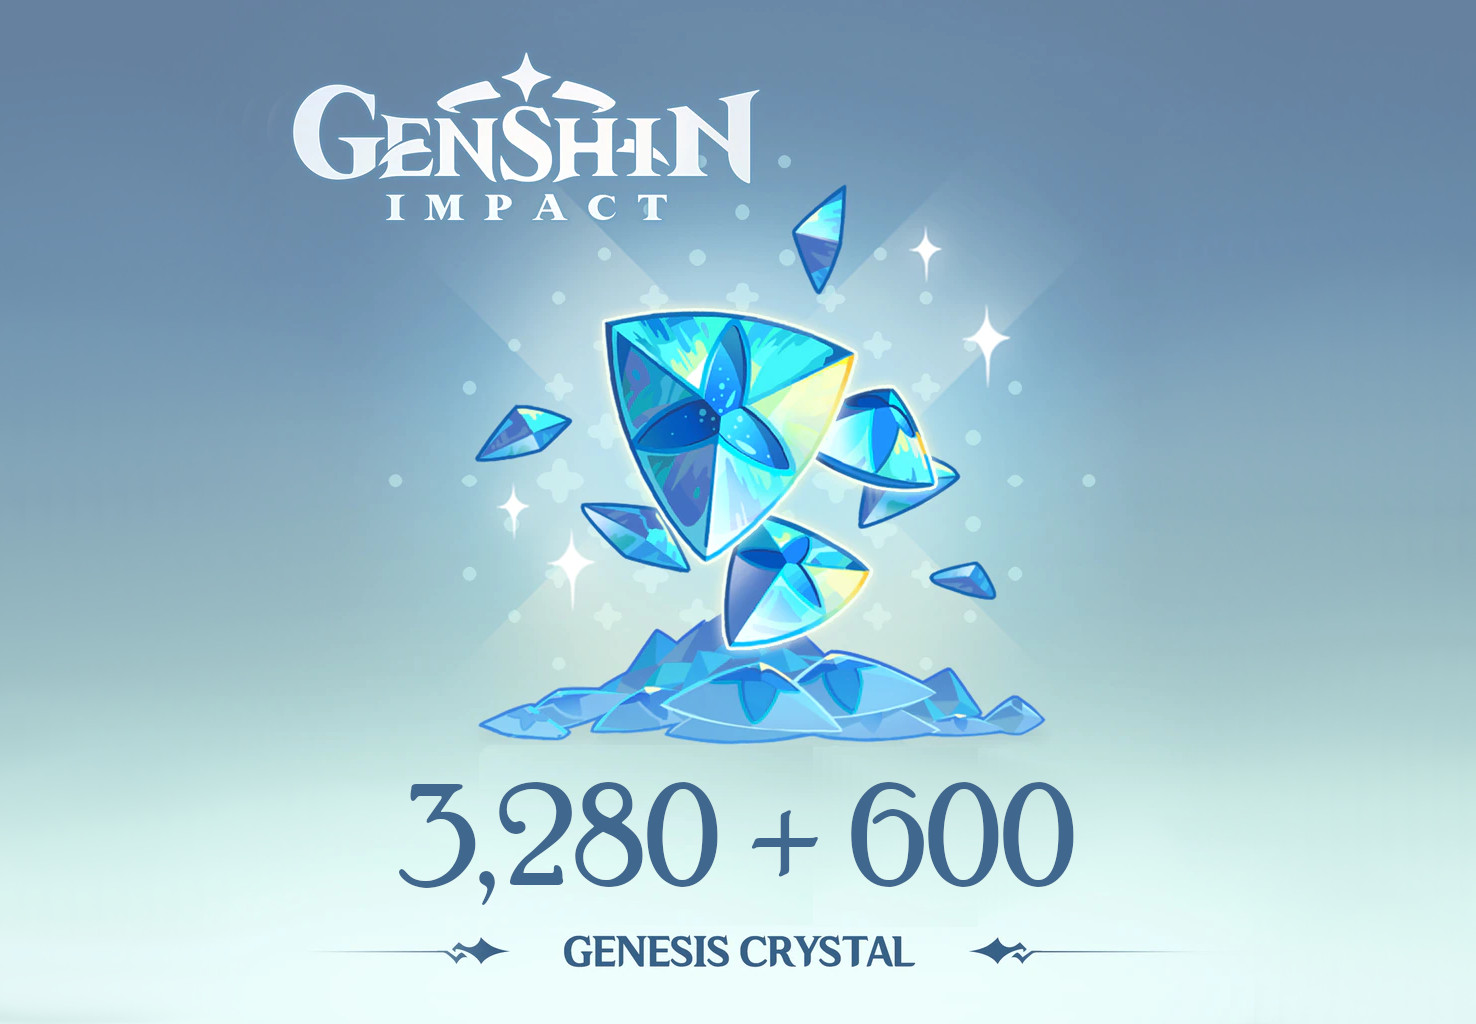 Genshin Impact - 3,280 + 600 Genesis Crystals Reidos Voucher, $53.39